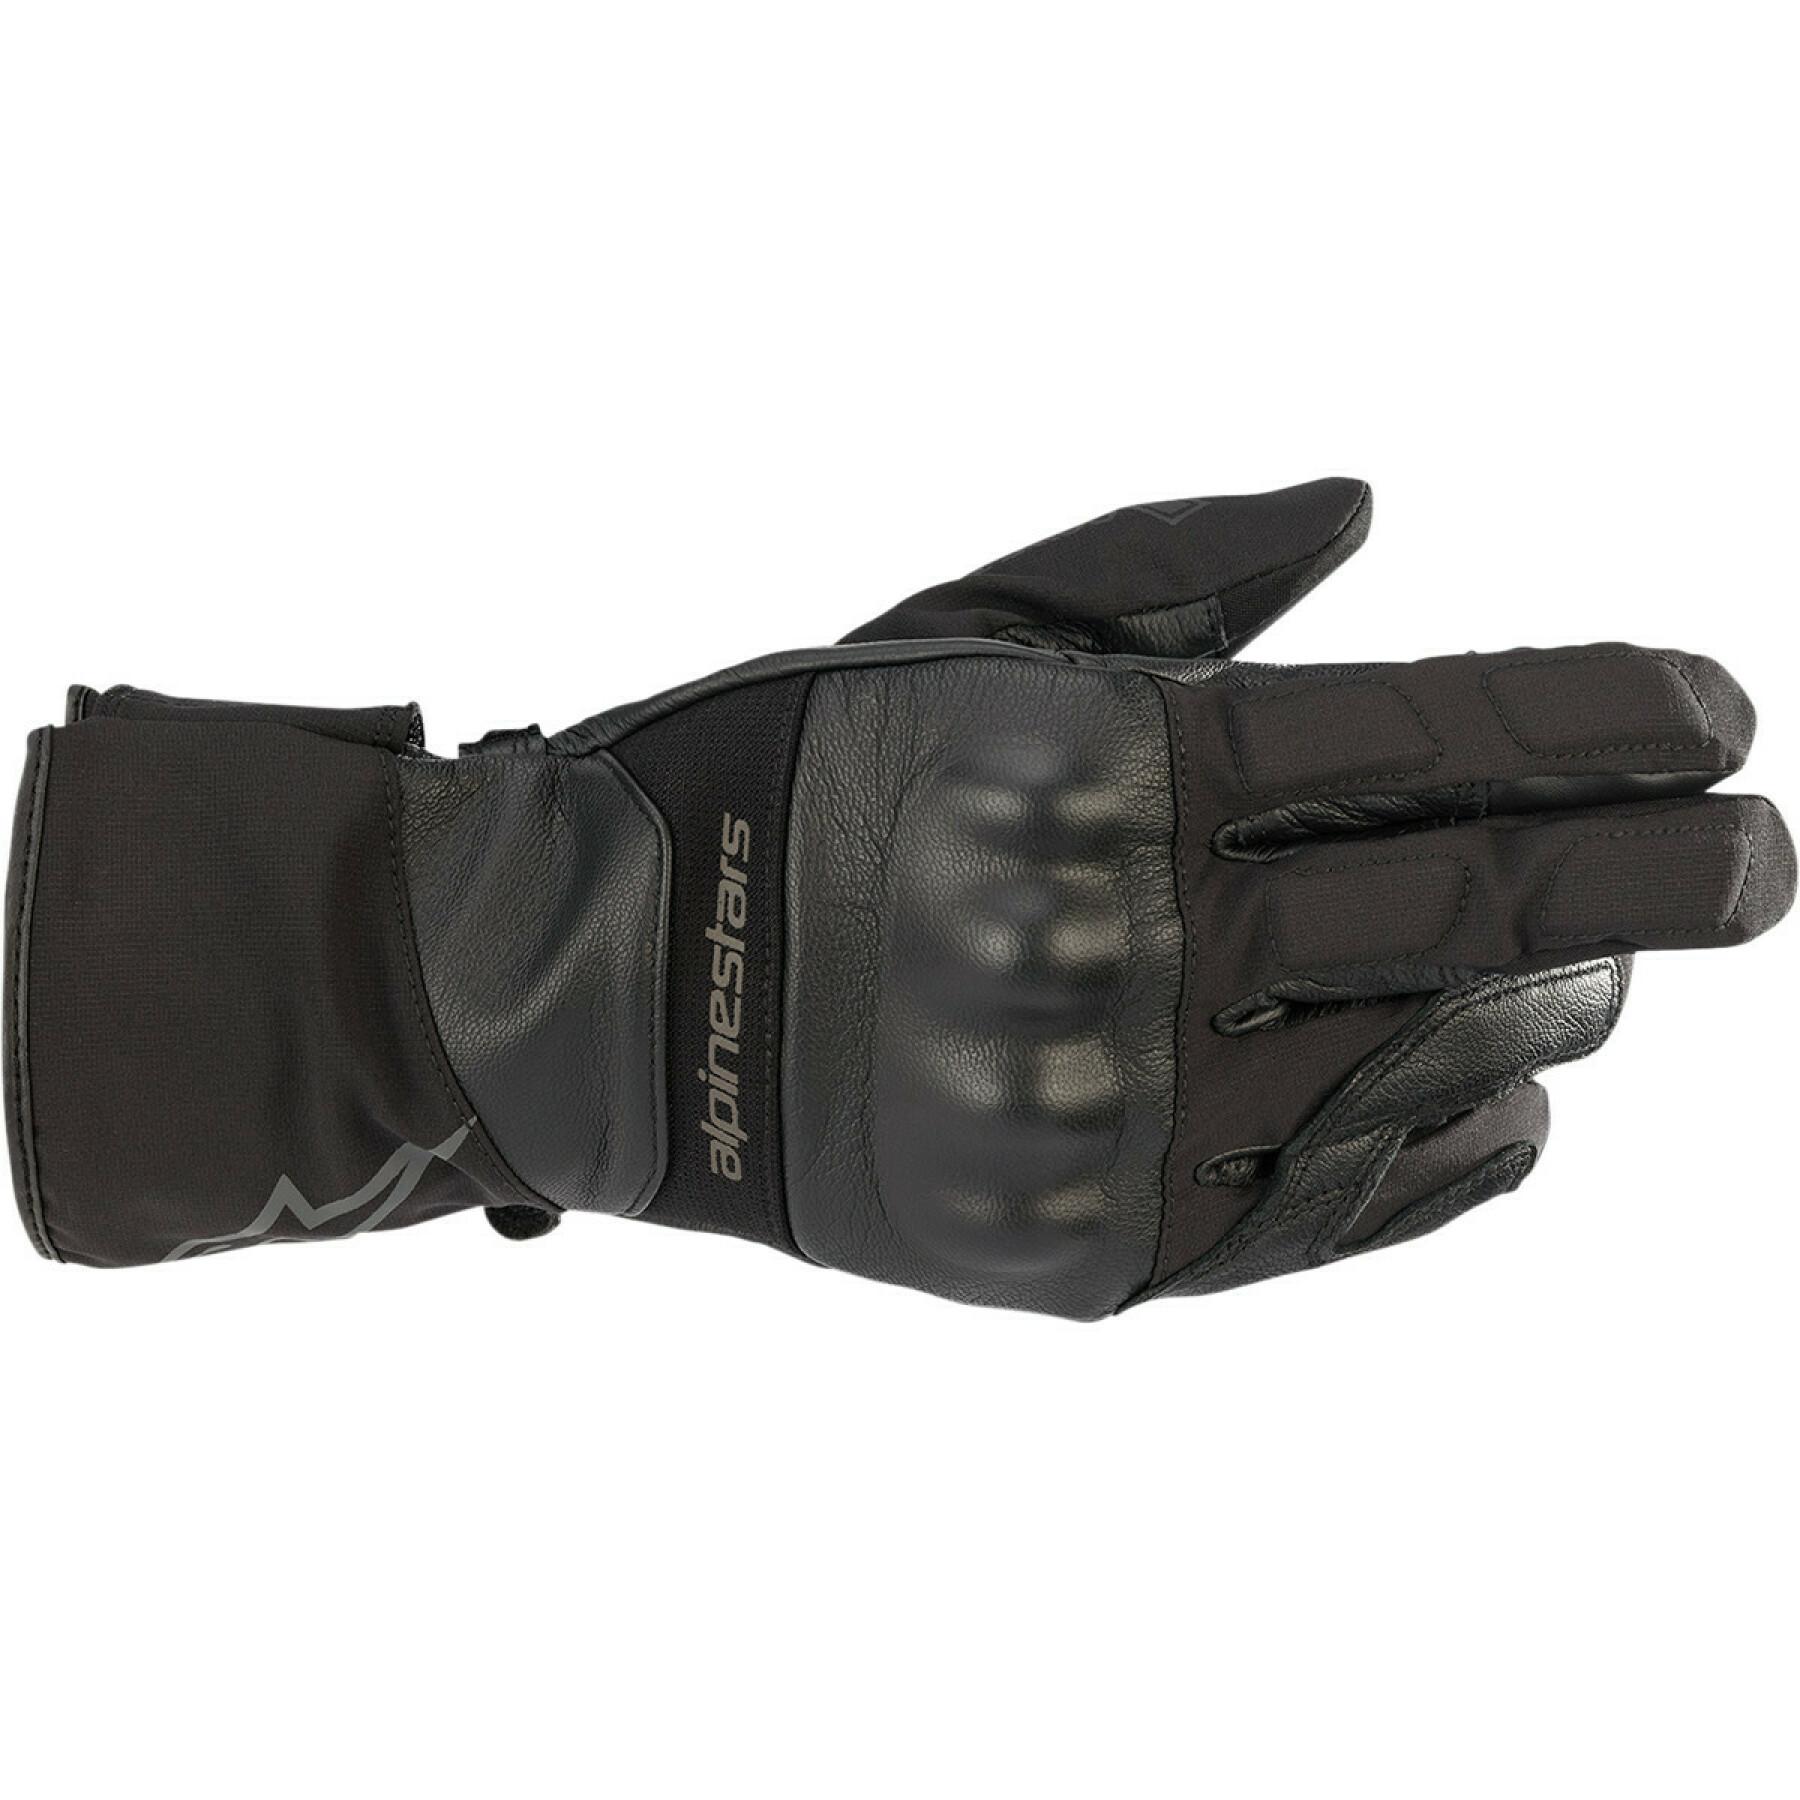 Handskar för motorcykel Alpinestars range G-tex